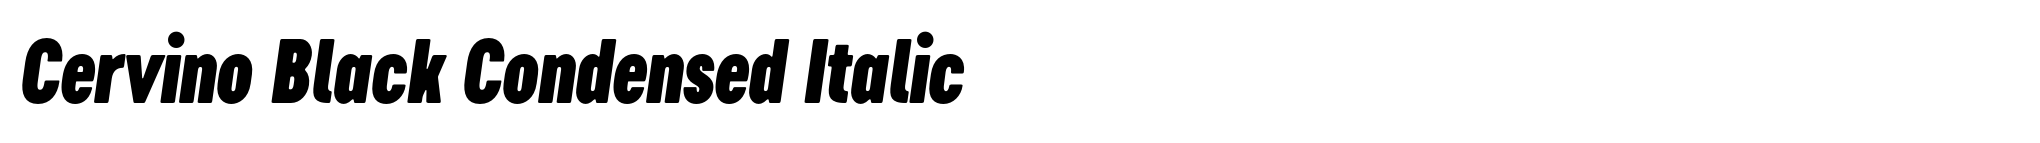 Cervino Black Condensed Italic image